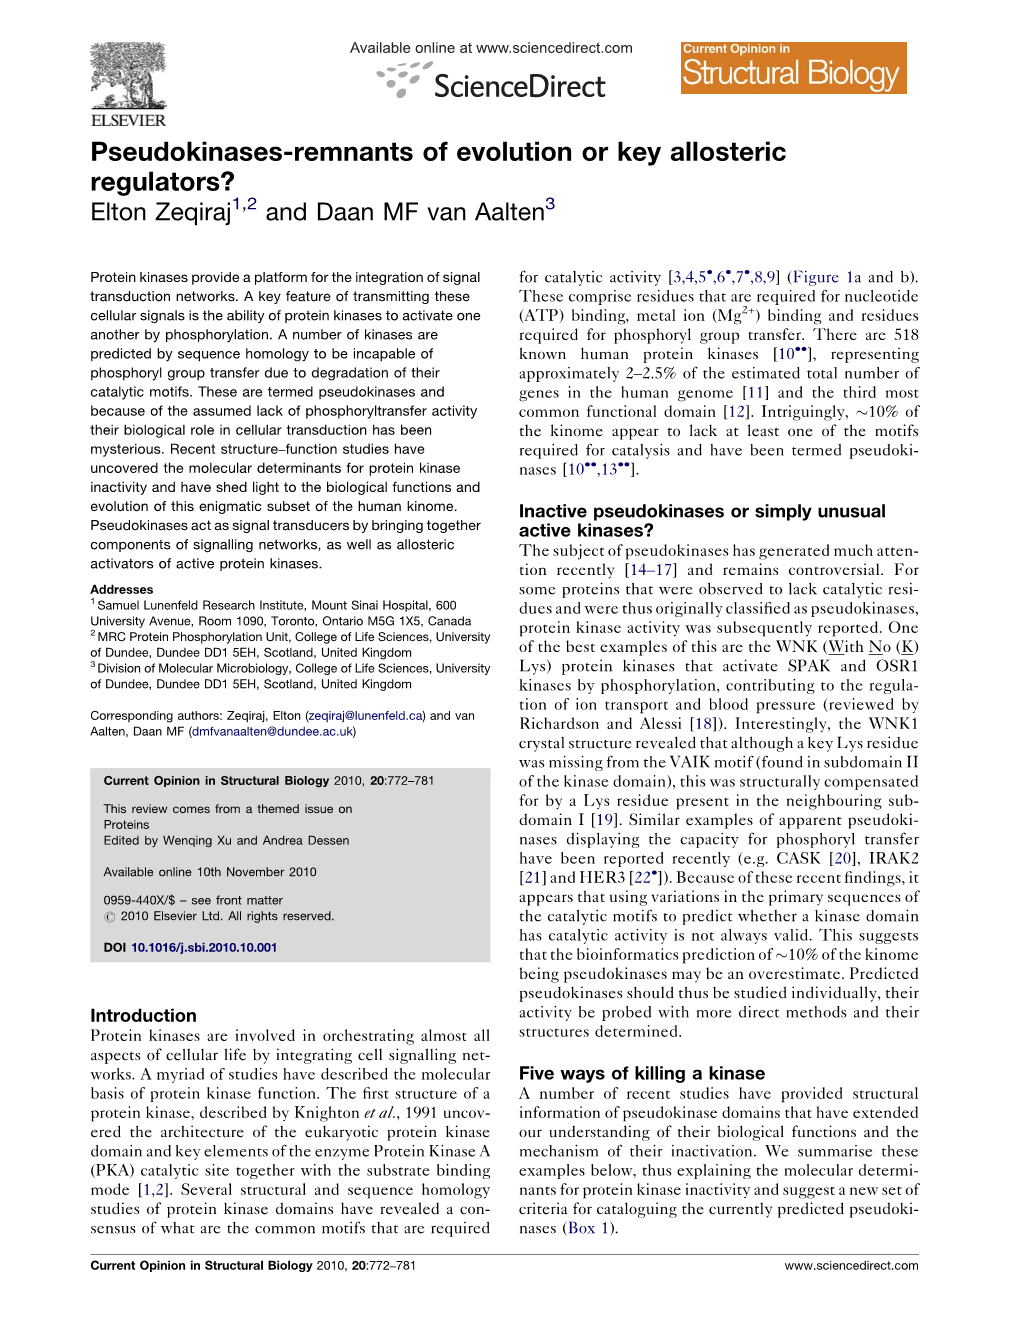 Pseudokinases-Remnants of Evolution Or Key Allosteric Regulators? Elton Zeqiraj1,2 and Daan MF Van Aalten3